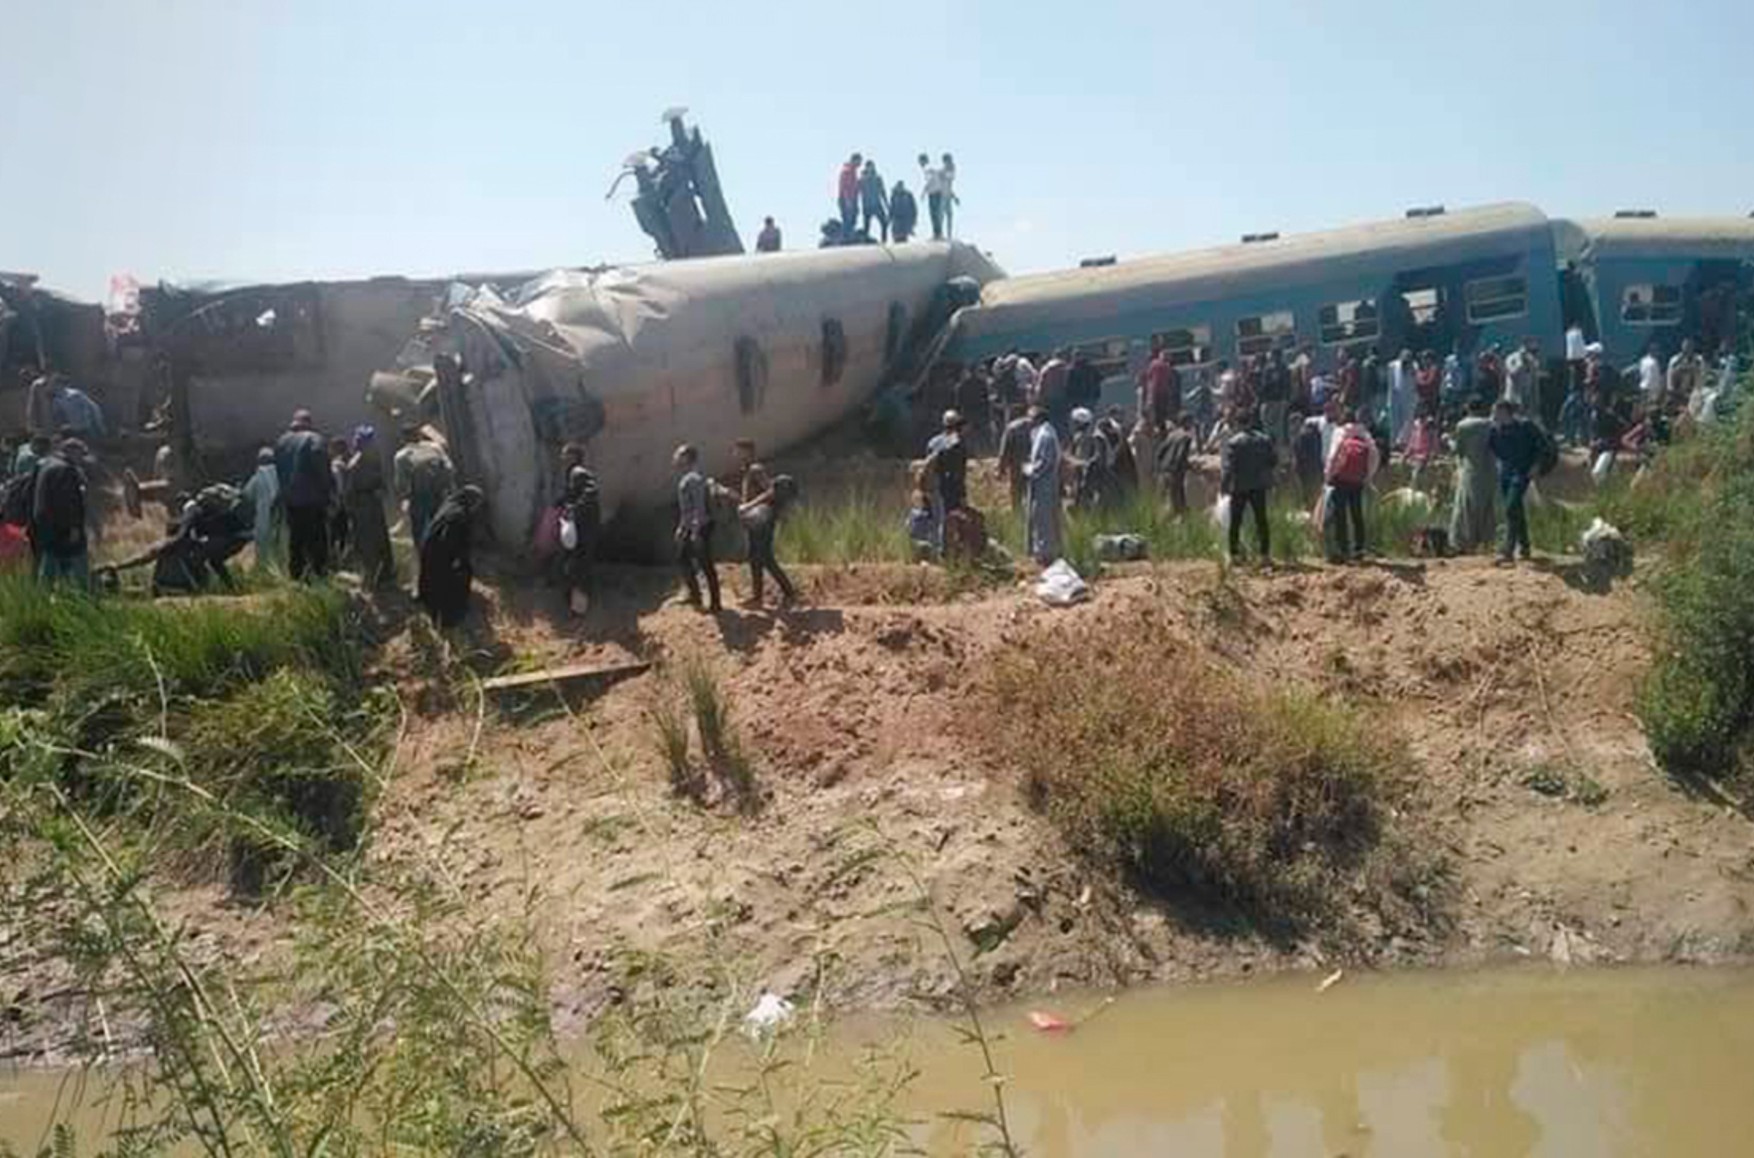 У Єгипті при зіткненні двох потягів загинули понад 30 людей